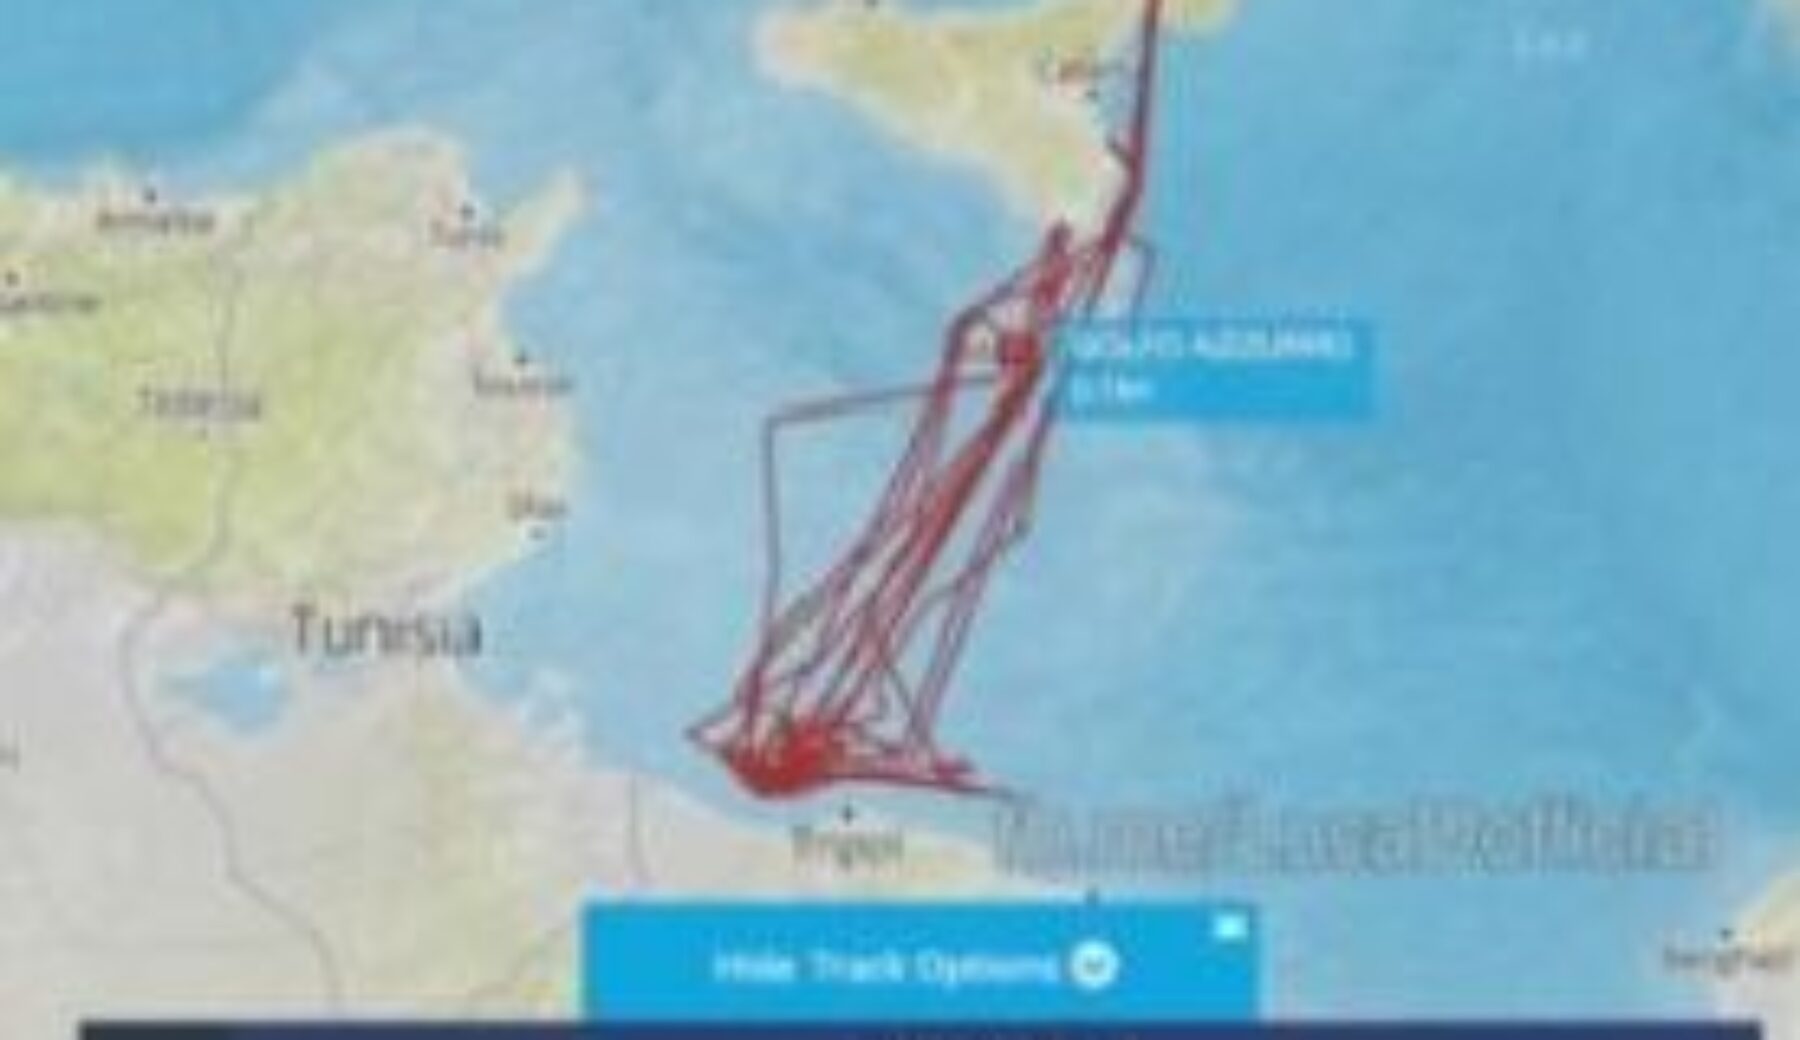 A Striscia la notizia sulle tracce delle navi che vanno
in soccorso dei migranti a ridosso della costa libica